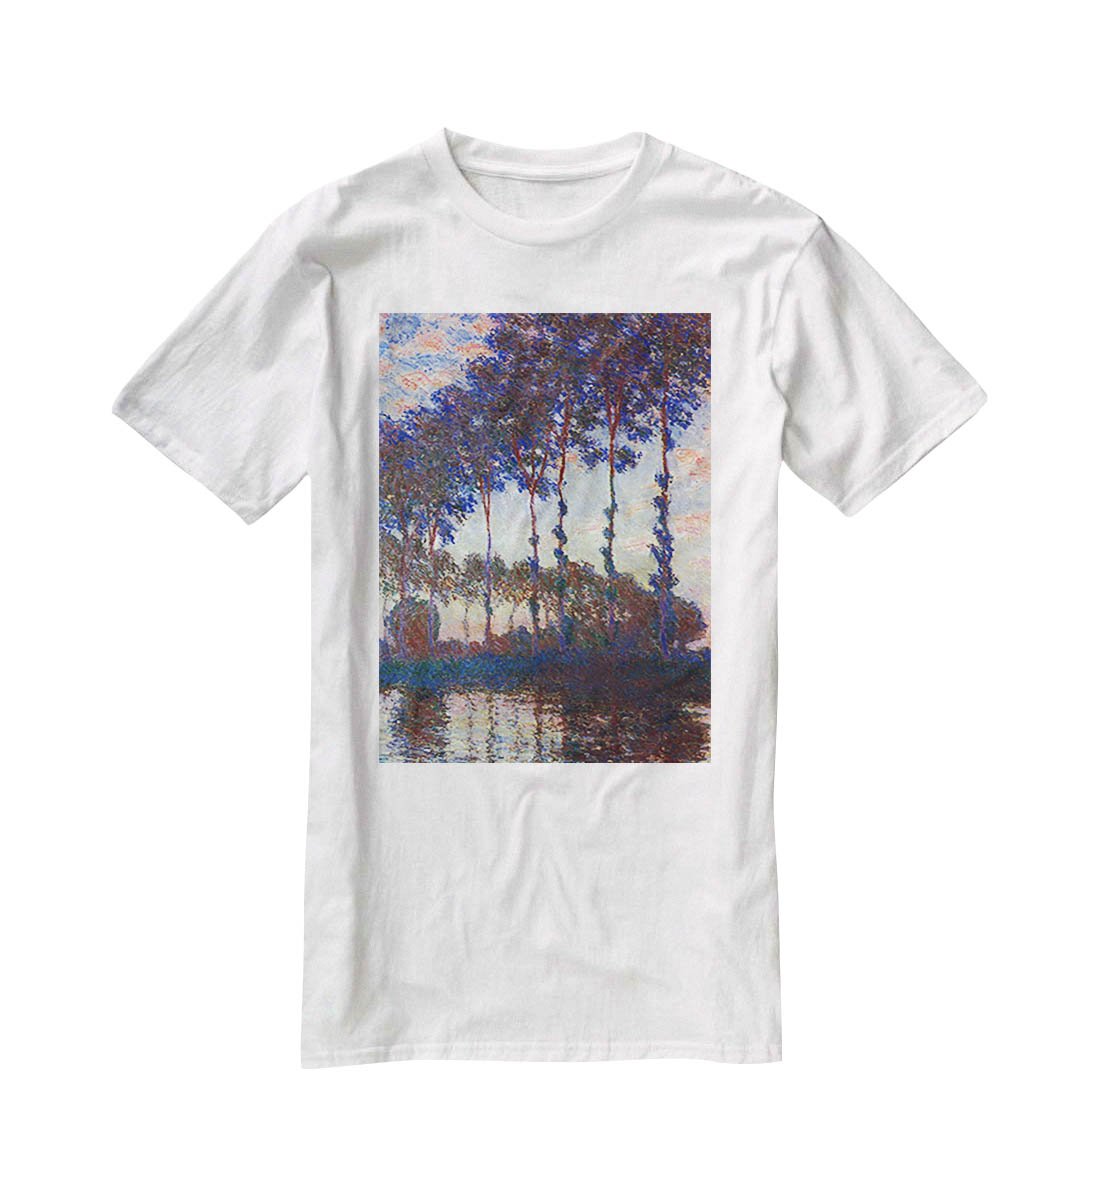 Poplars sunset by Monet T-Shirt - Canvas Art Rocks - 5